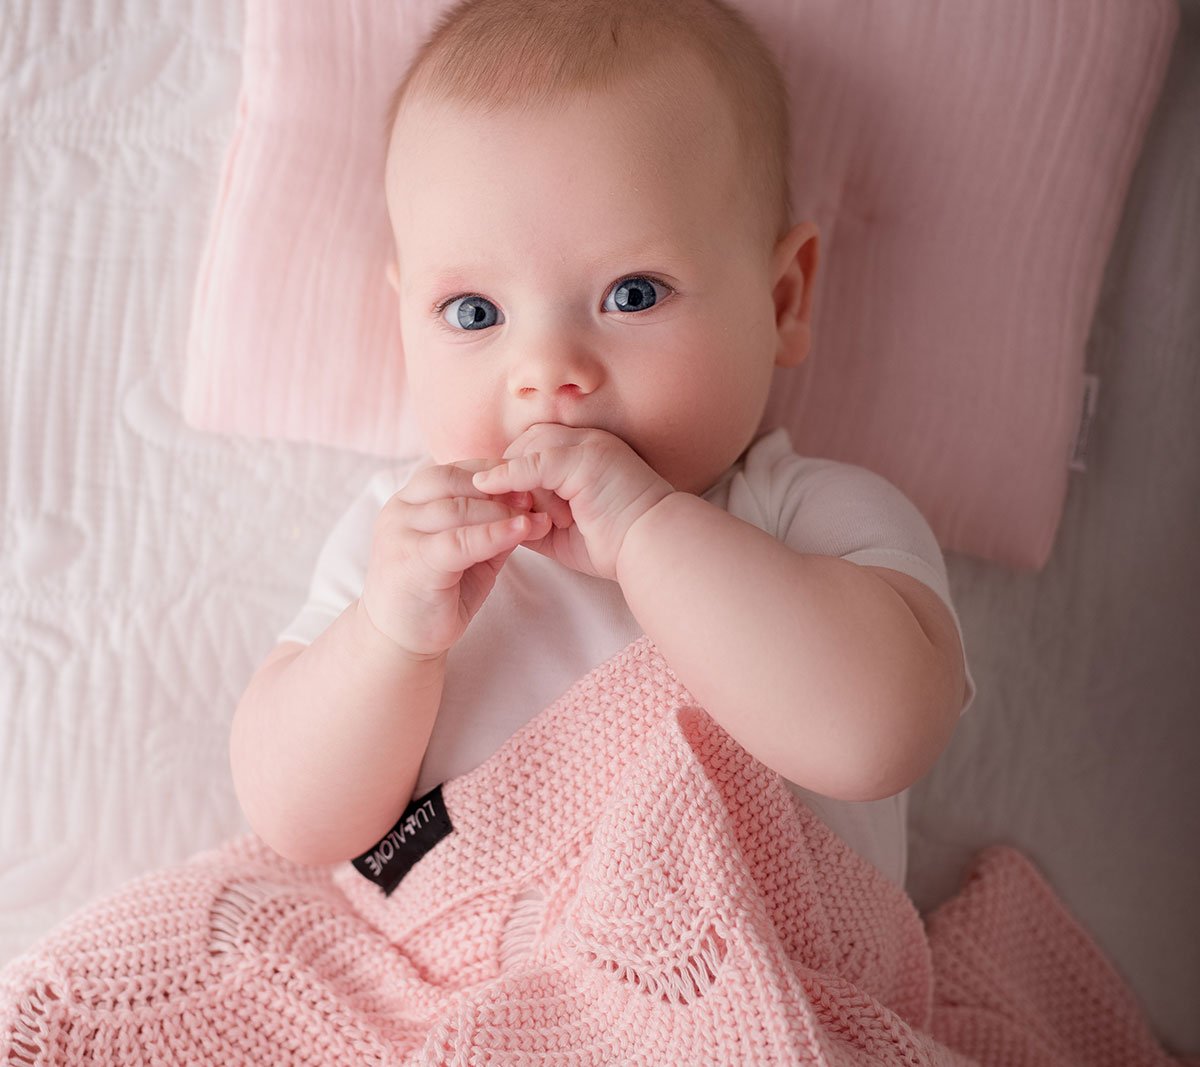 Cellular bamboo baby blanket - Rose quartz - Seashell Blanket Lullalove UK 